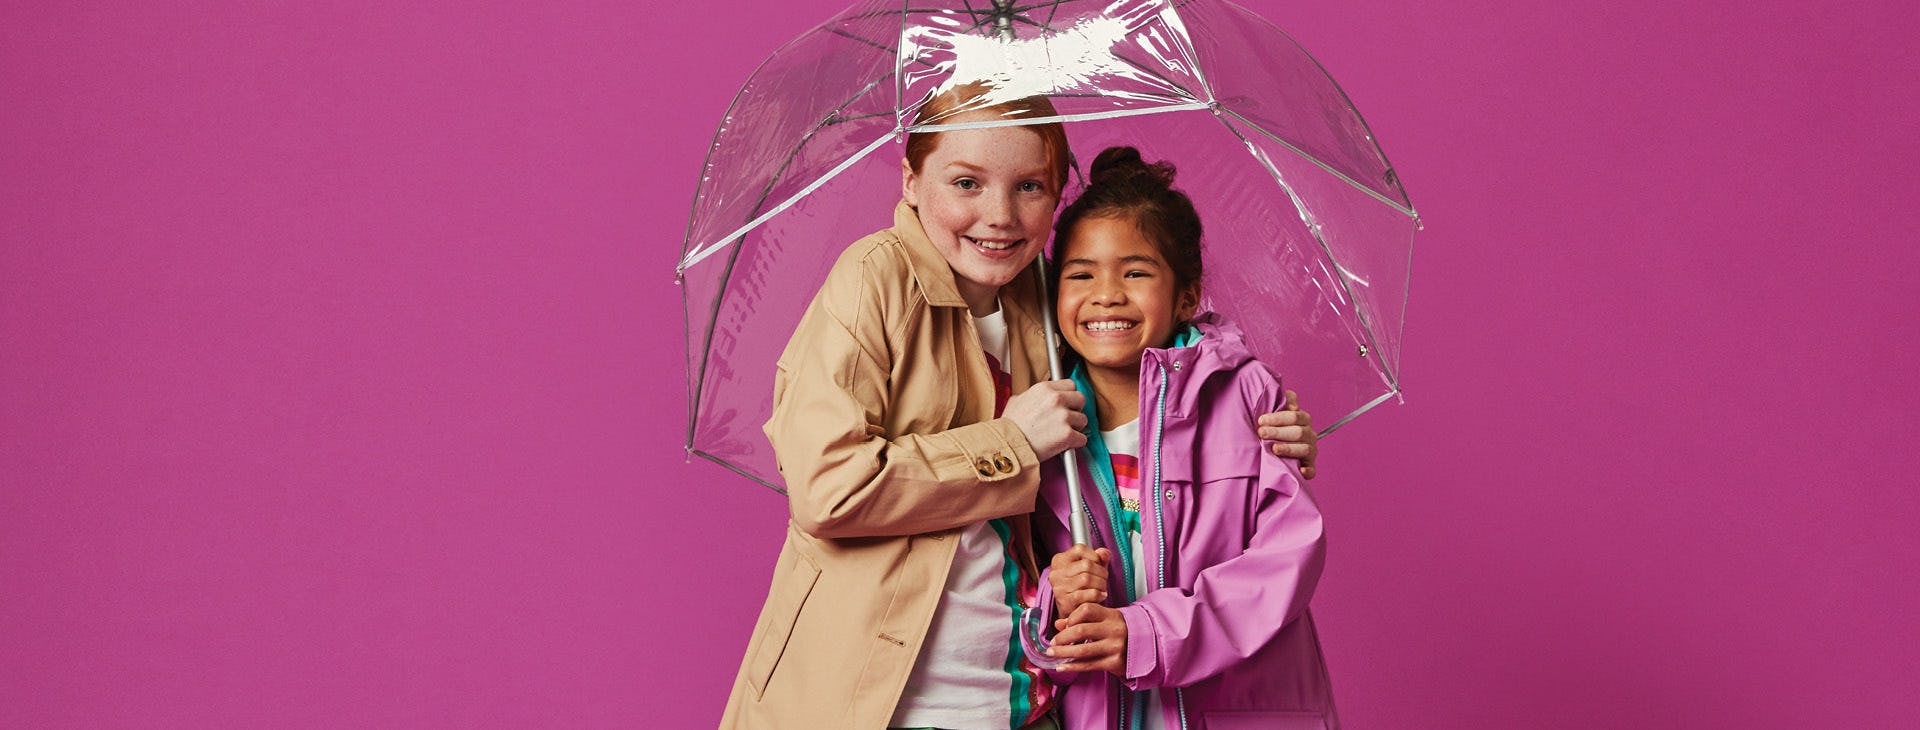 girls in umbrella